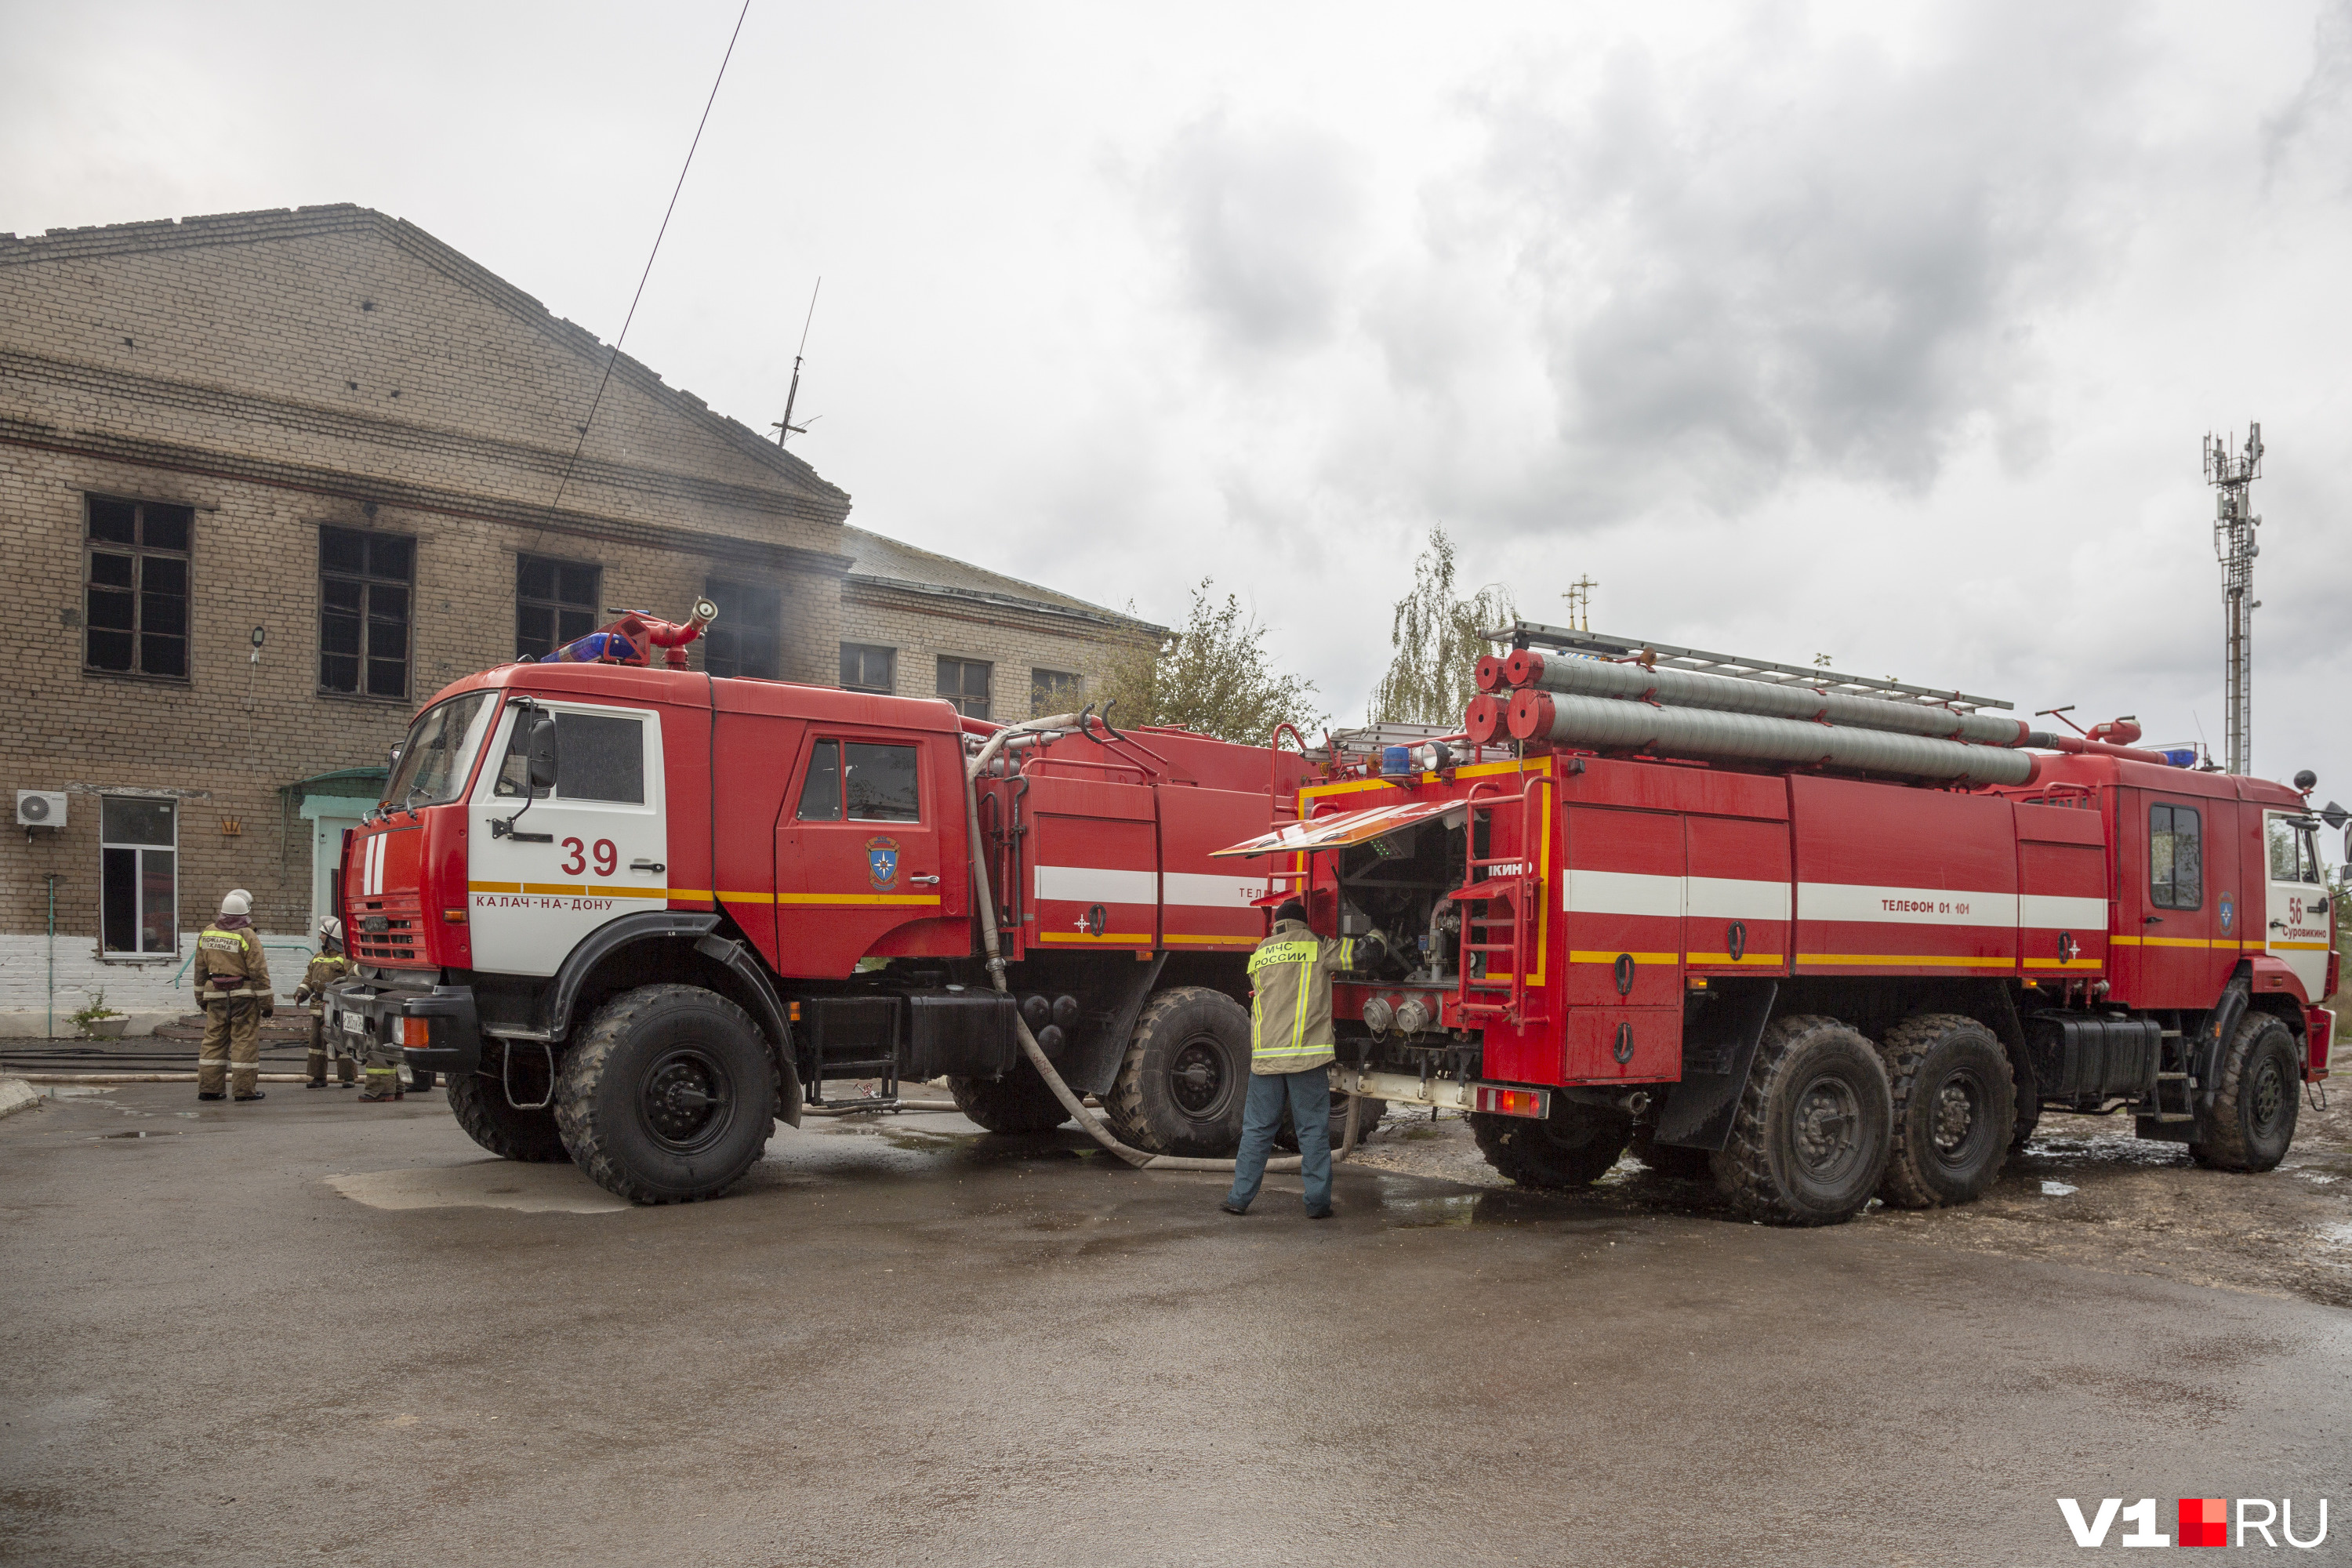 На помощь пожарным из Калача прибыла подмога. Из Суровикино — за 105 километров от места пожара